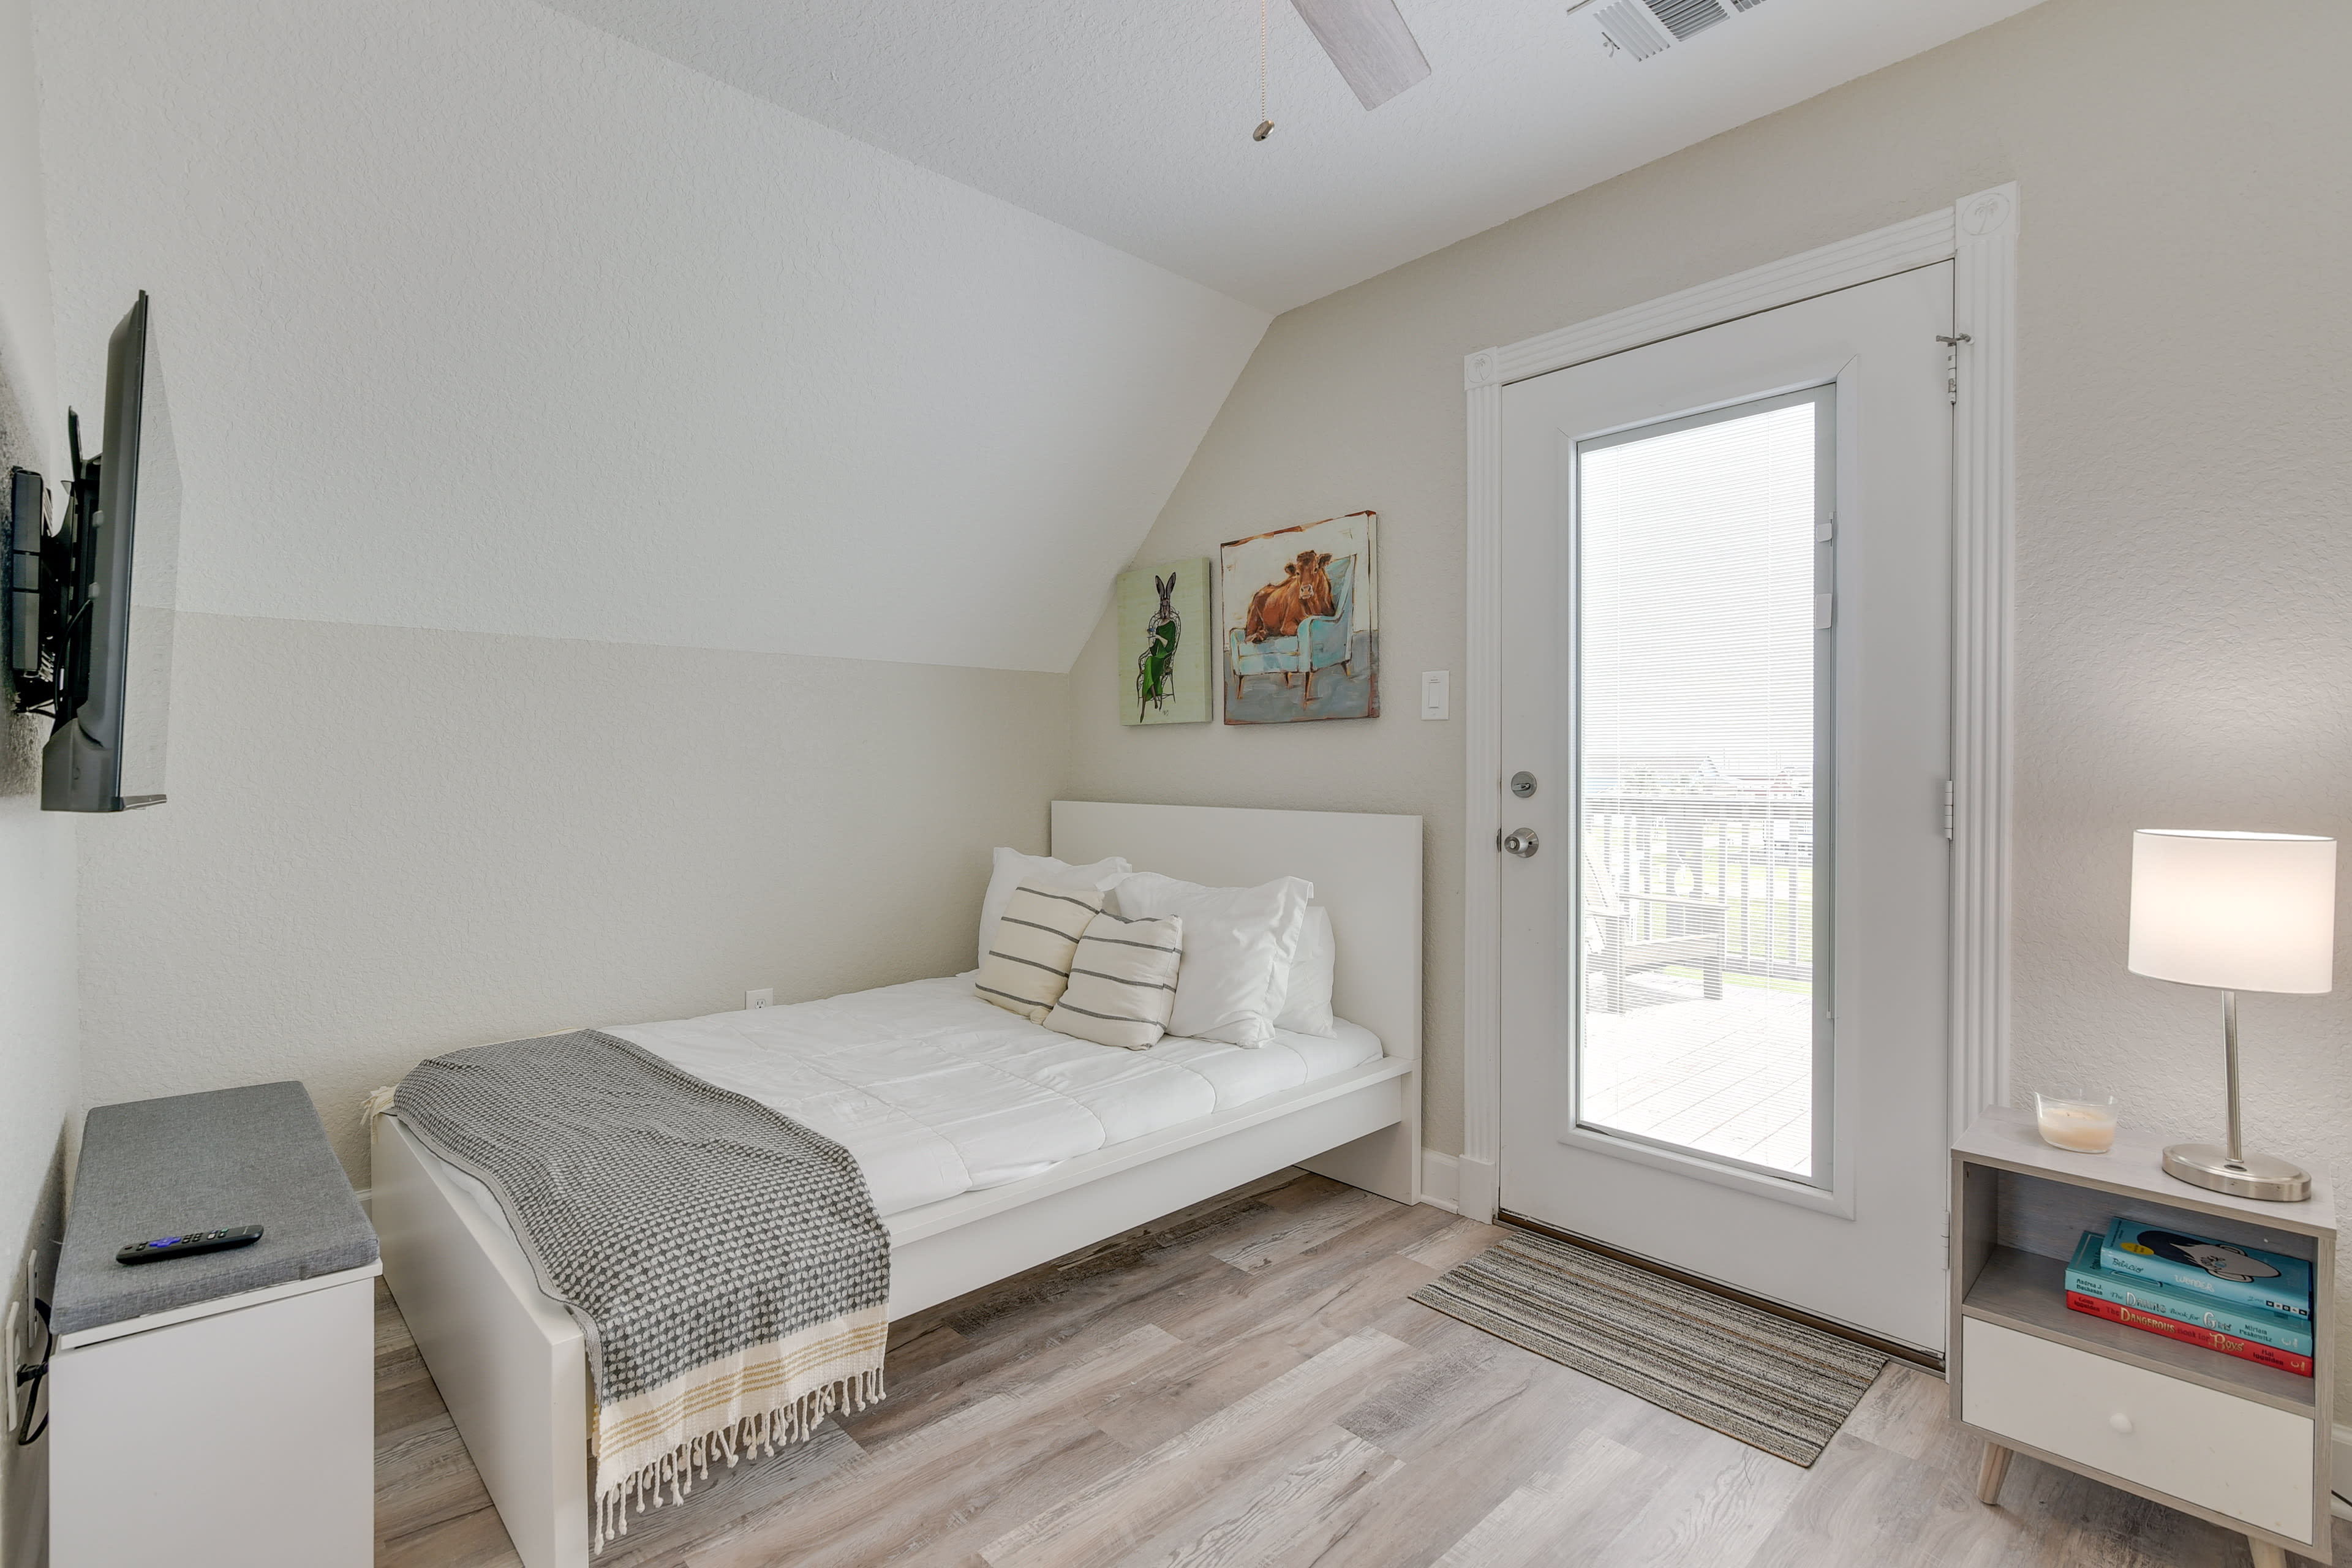 Bedroom 3 | 2nd Floor | Full Bed | Twin Bunk Bed | Smart TV | Balcony Access